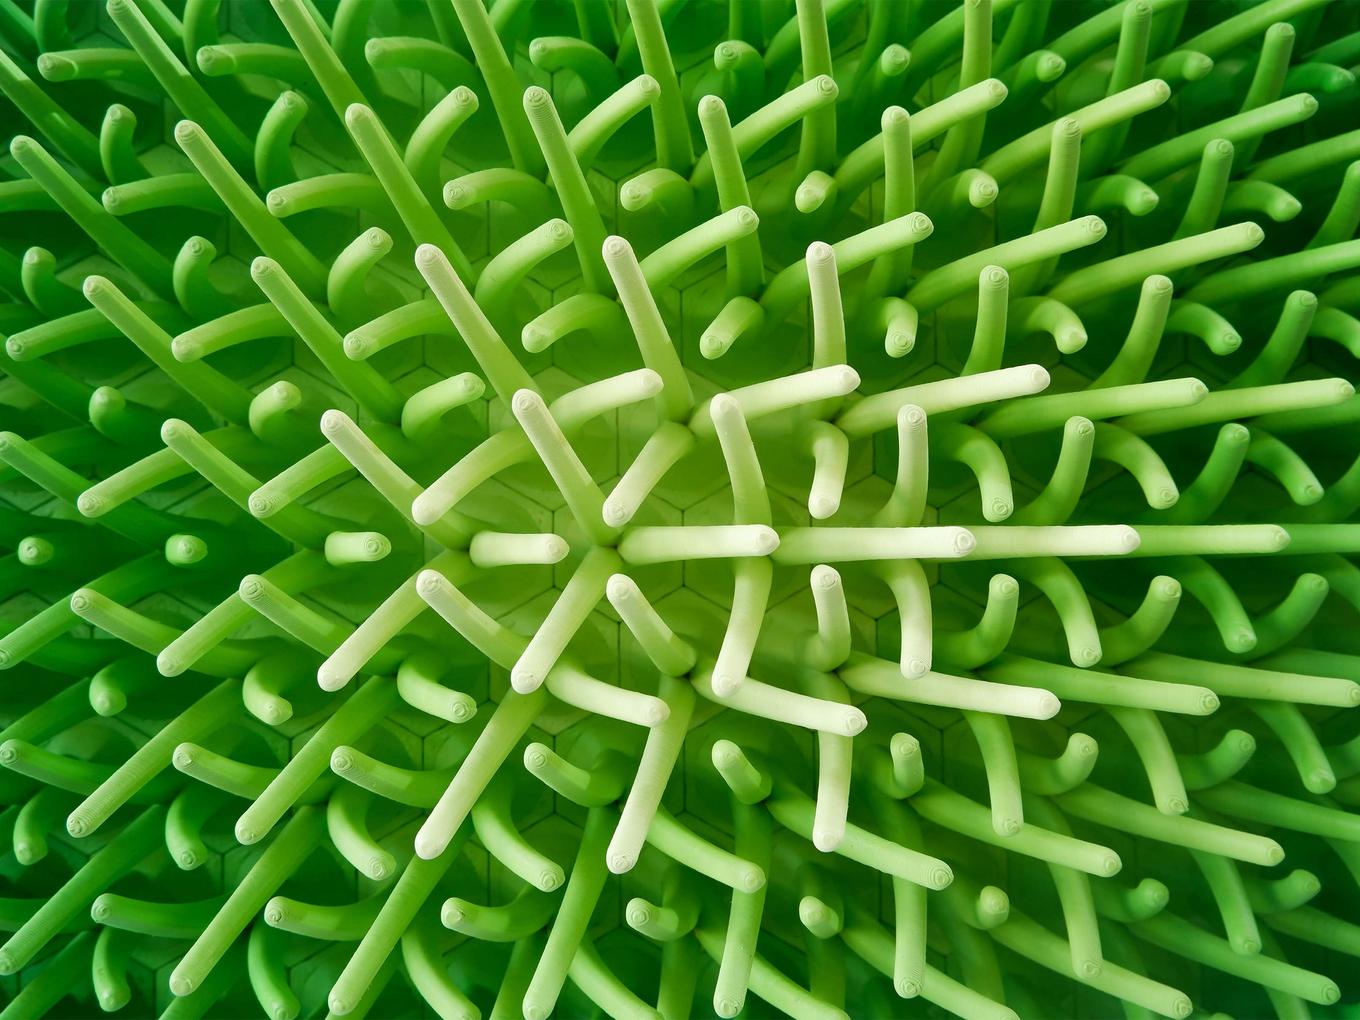 Greenery | Herschel Shapiro | Modern Dimensional 3D Wall Art Mosaic 